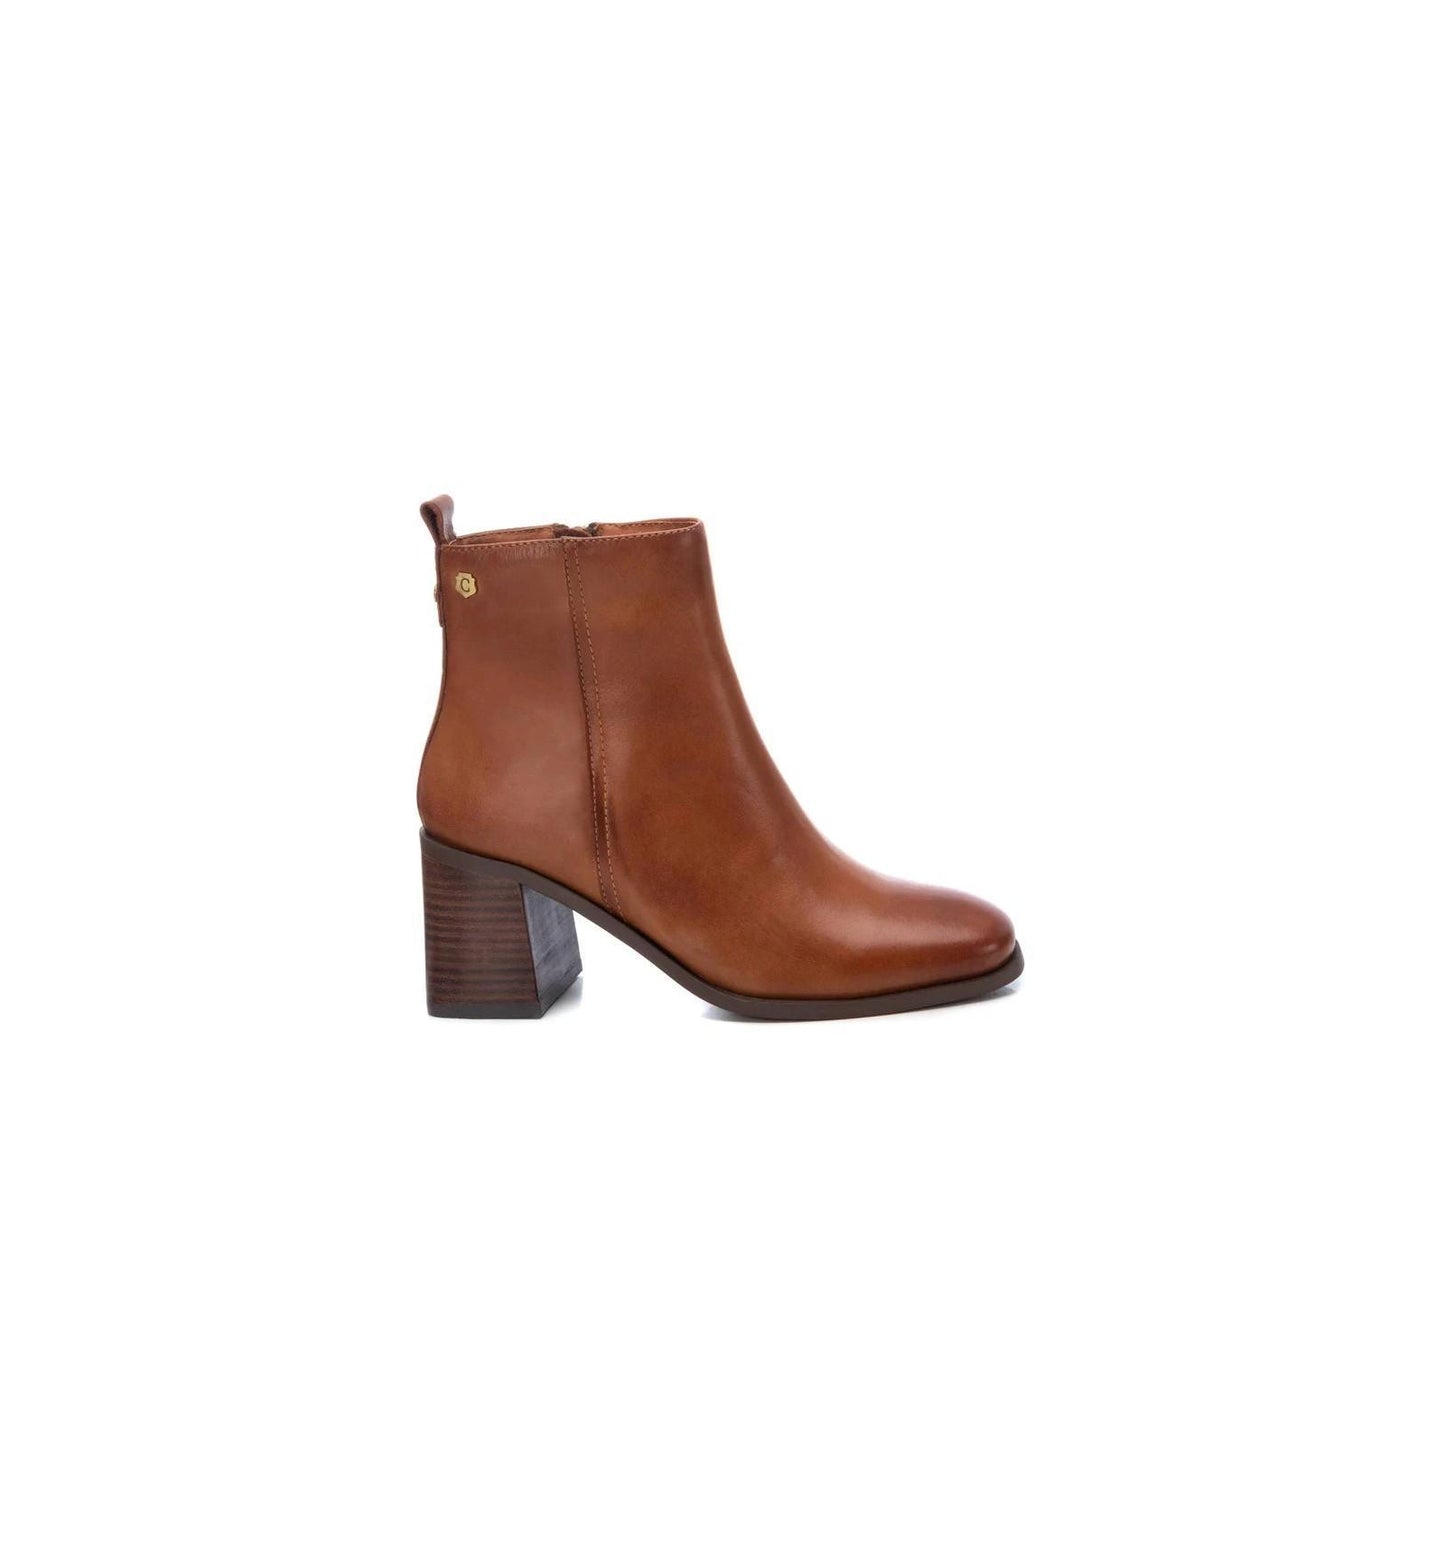 Carmela Tan Leather Boot 161228